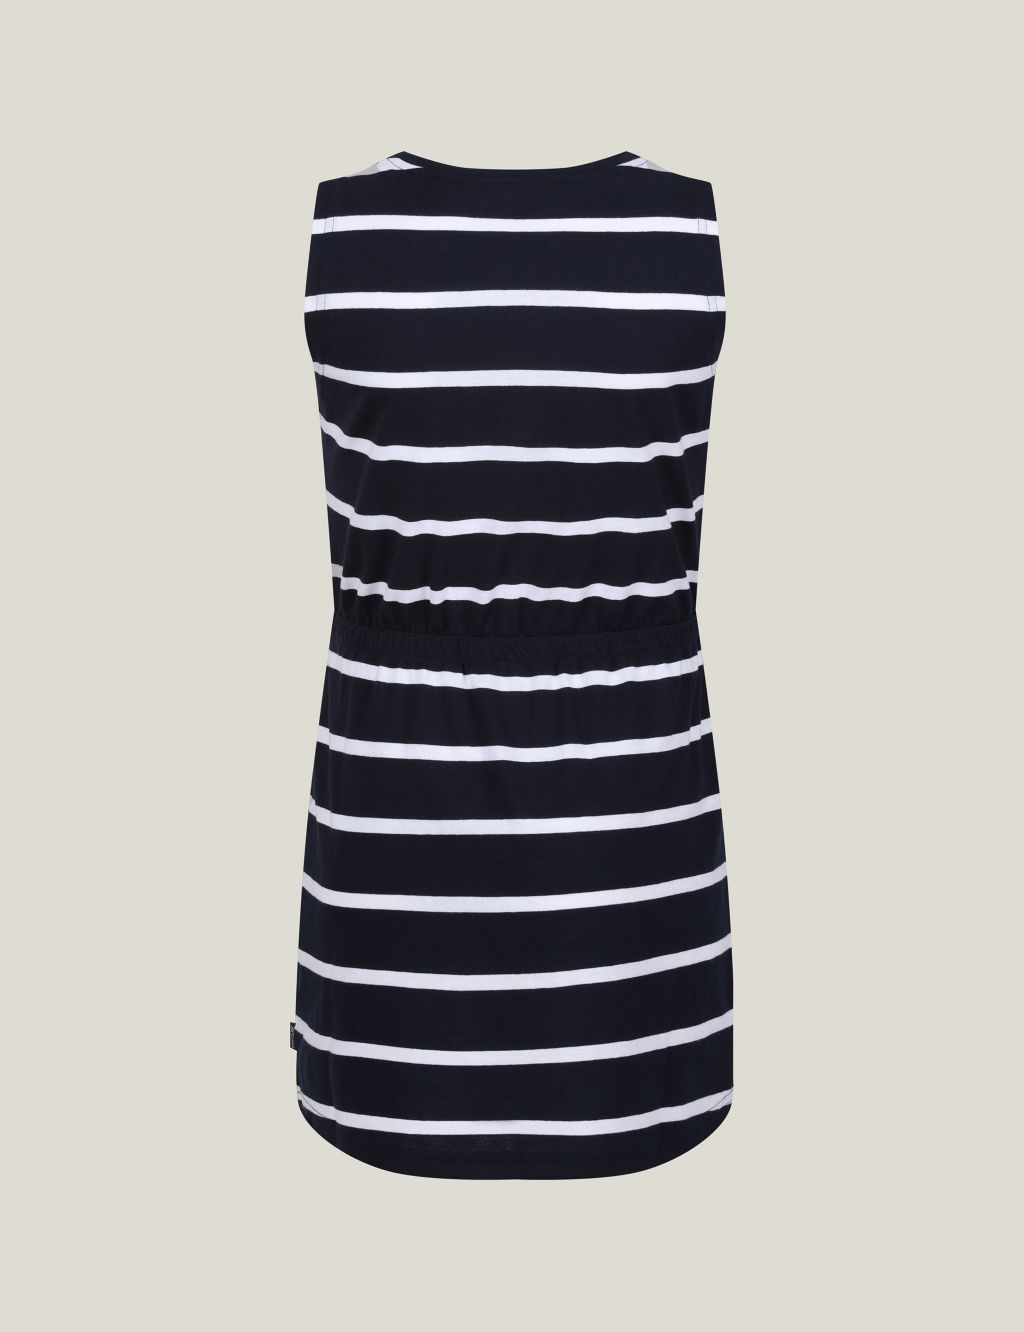 Beylina Cotton Rich Striped Dress (3-14 Yrs) 3 of 5